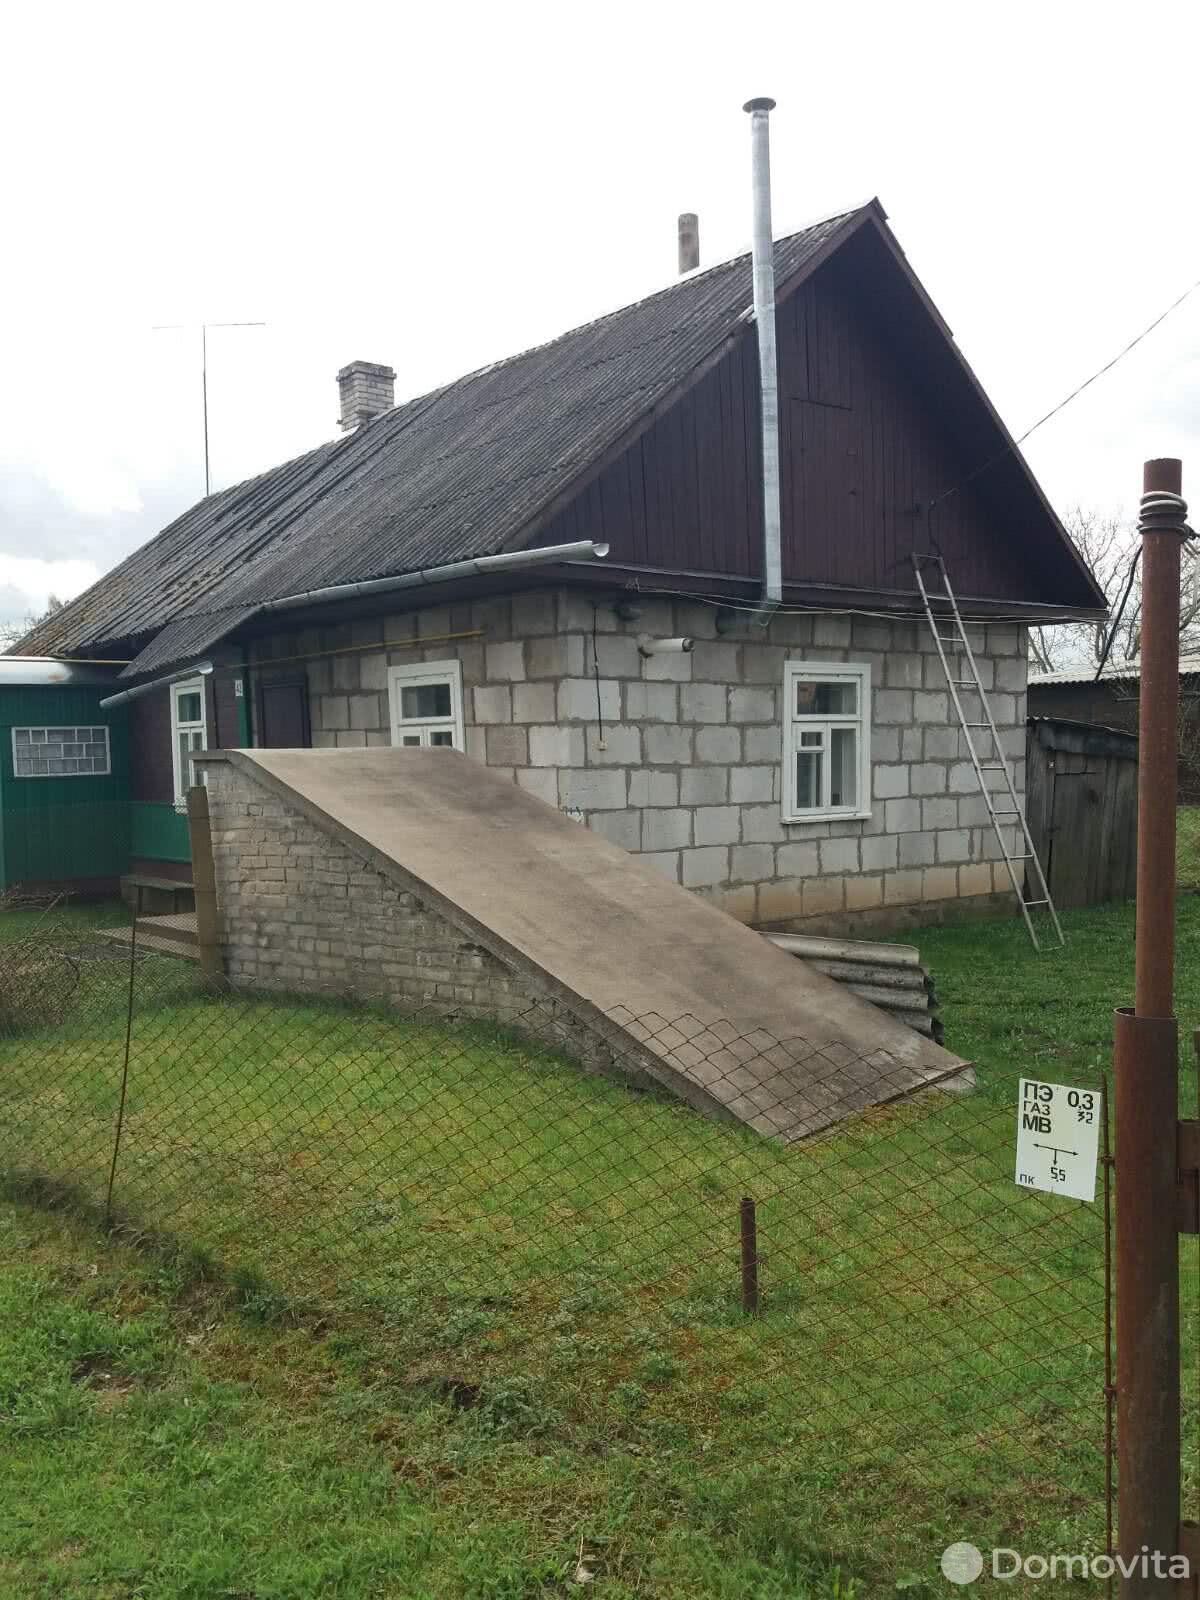 дом, Пограничный, ул. Зелёная, д. 42, стоимость продажи 35 000 р.